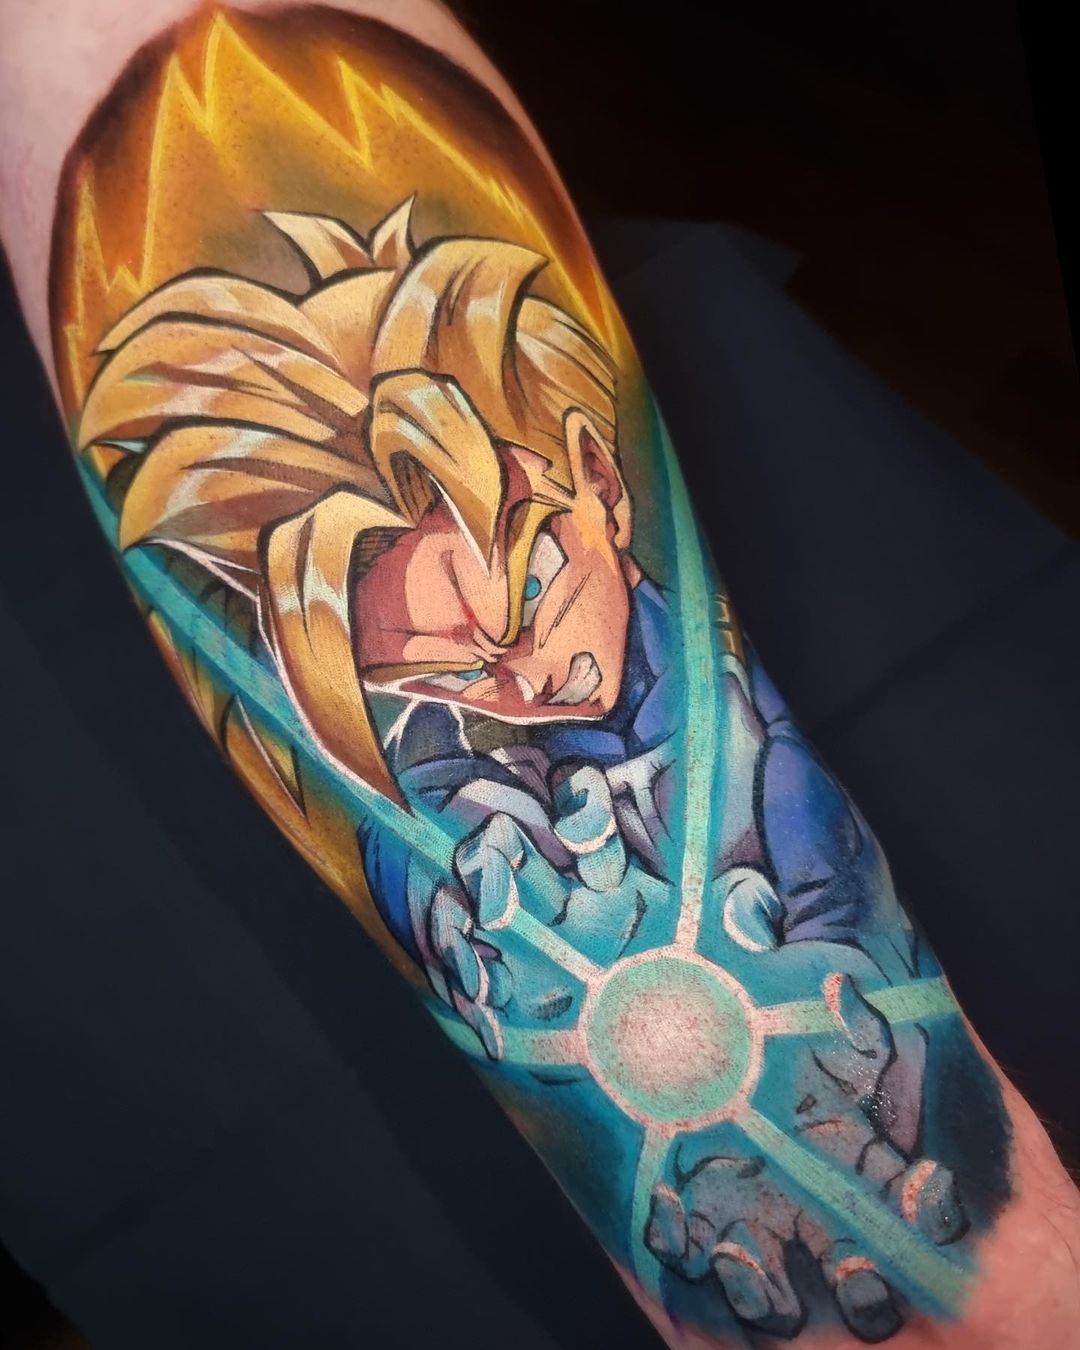 Super Saiyan Goku Dragon Ball Z Sleeve Tattoo